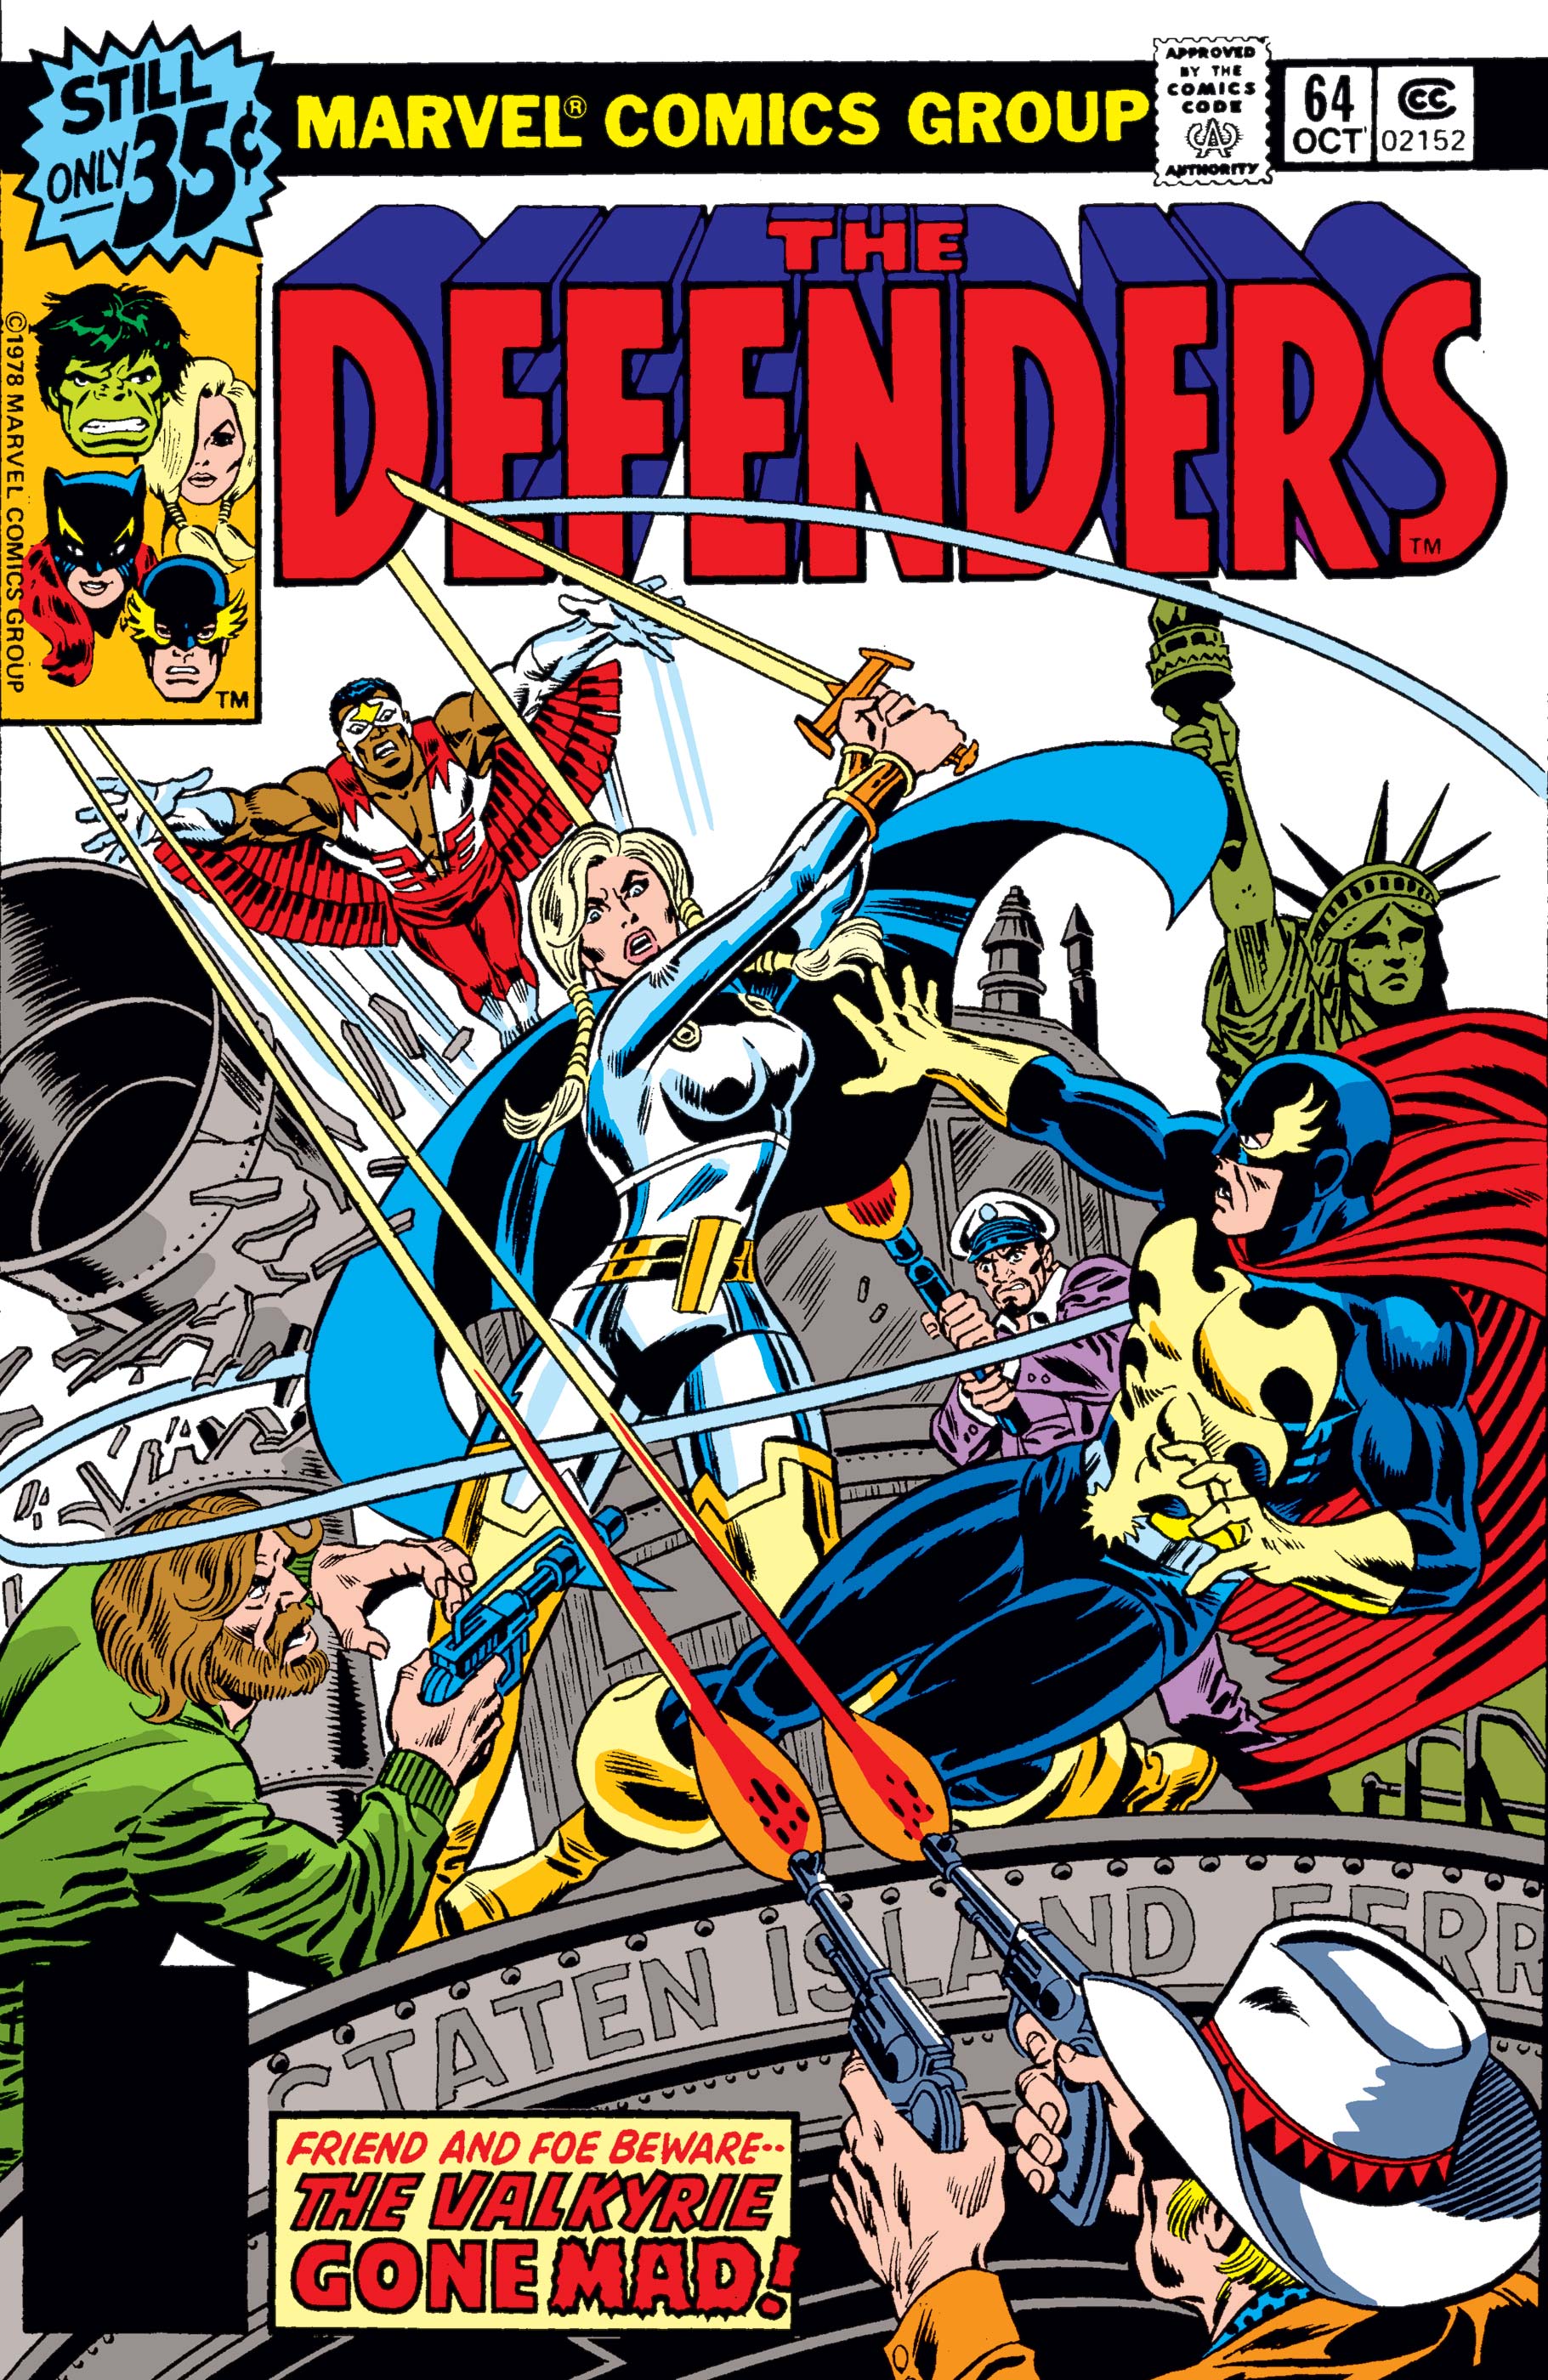 Defenders (1972) #64